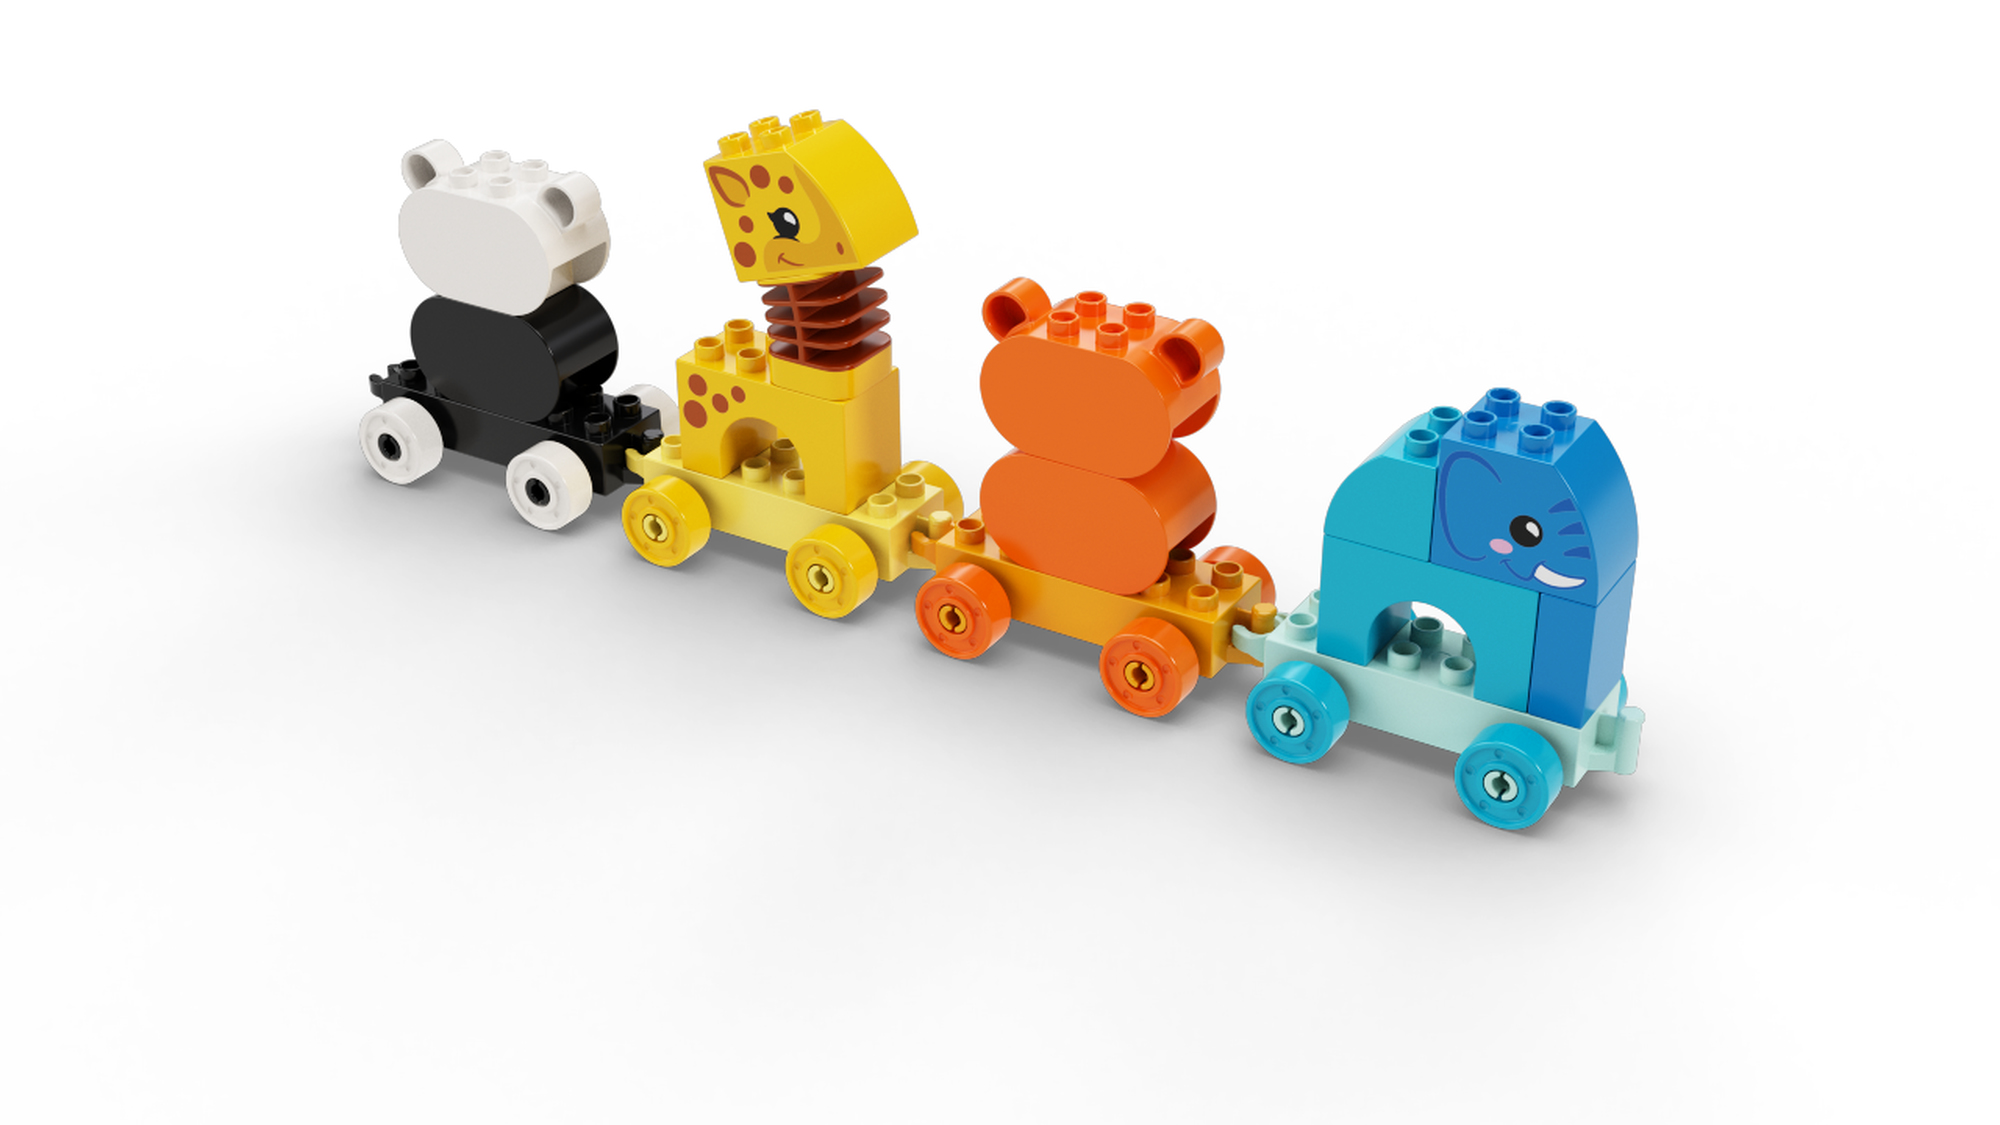 10955 - LEGO® DUPLO - Le train des animaux LEGO : King Jouet, 1er